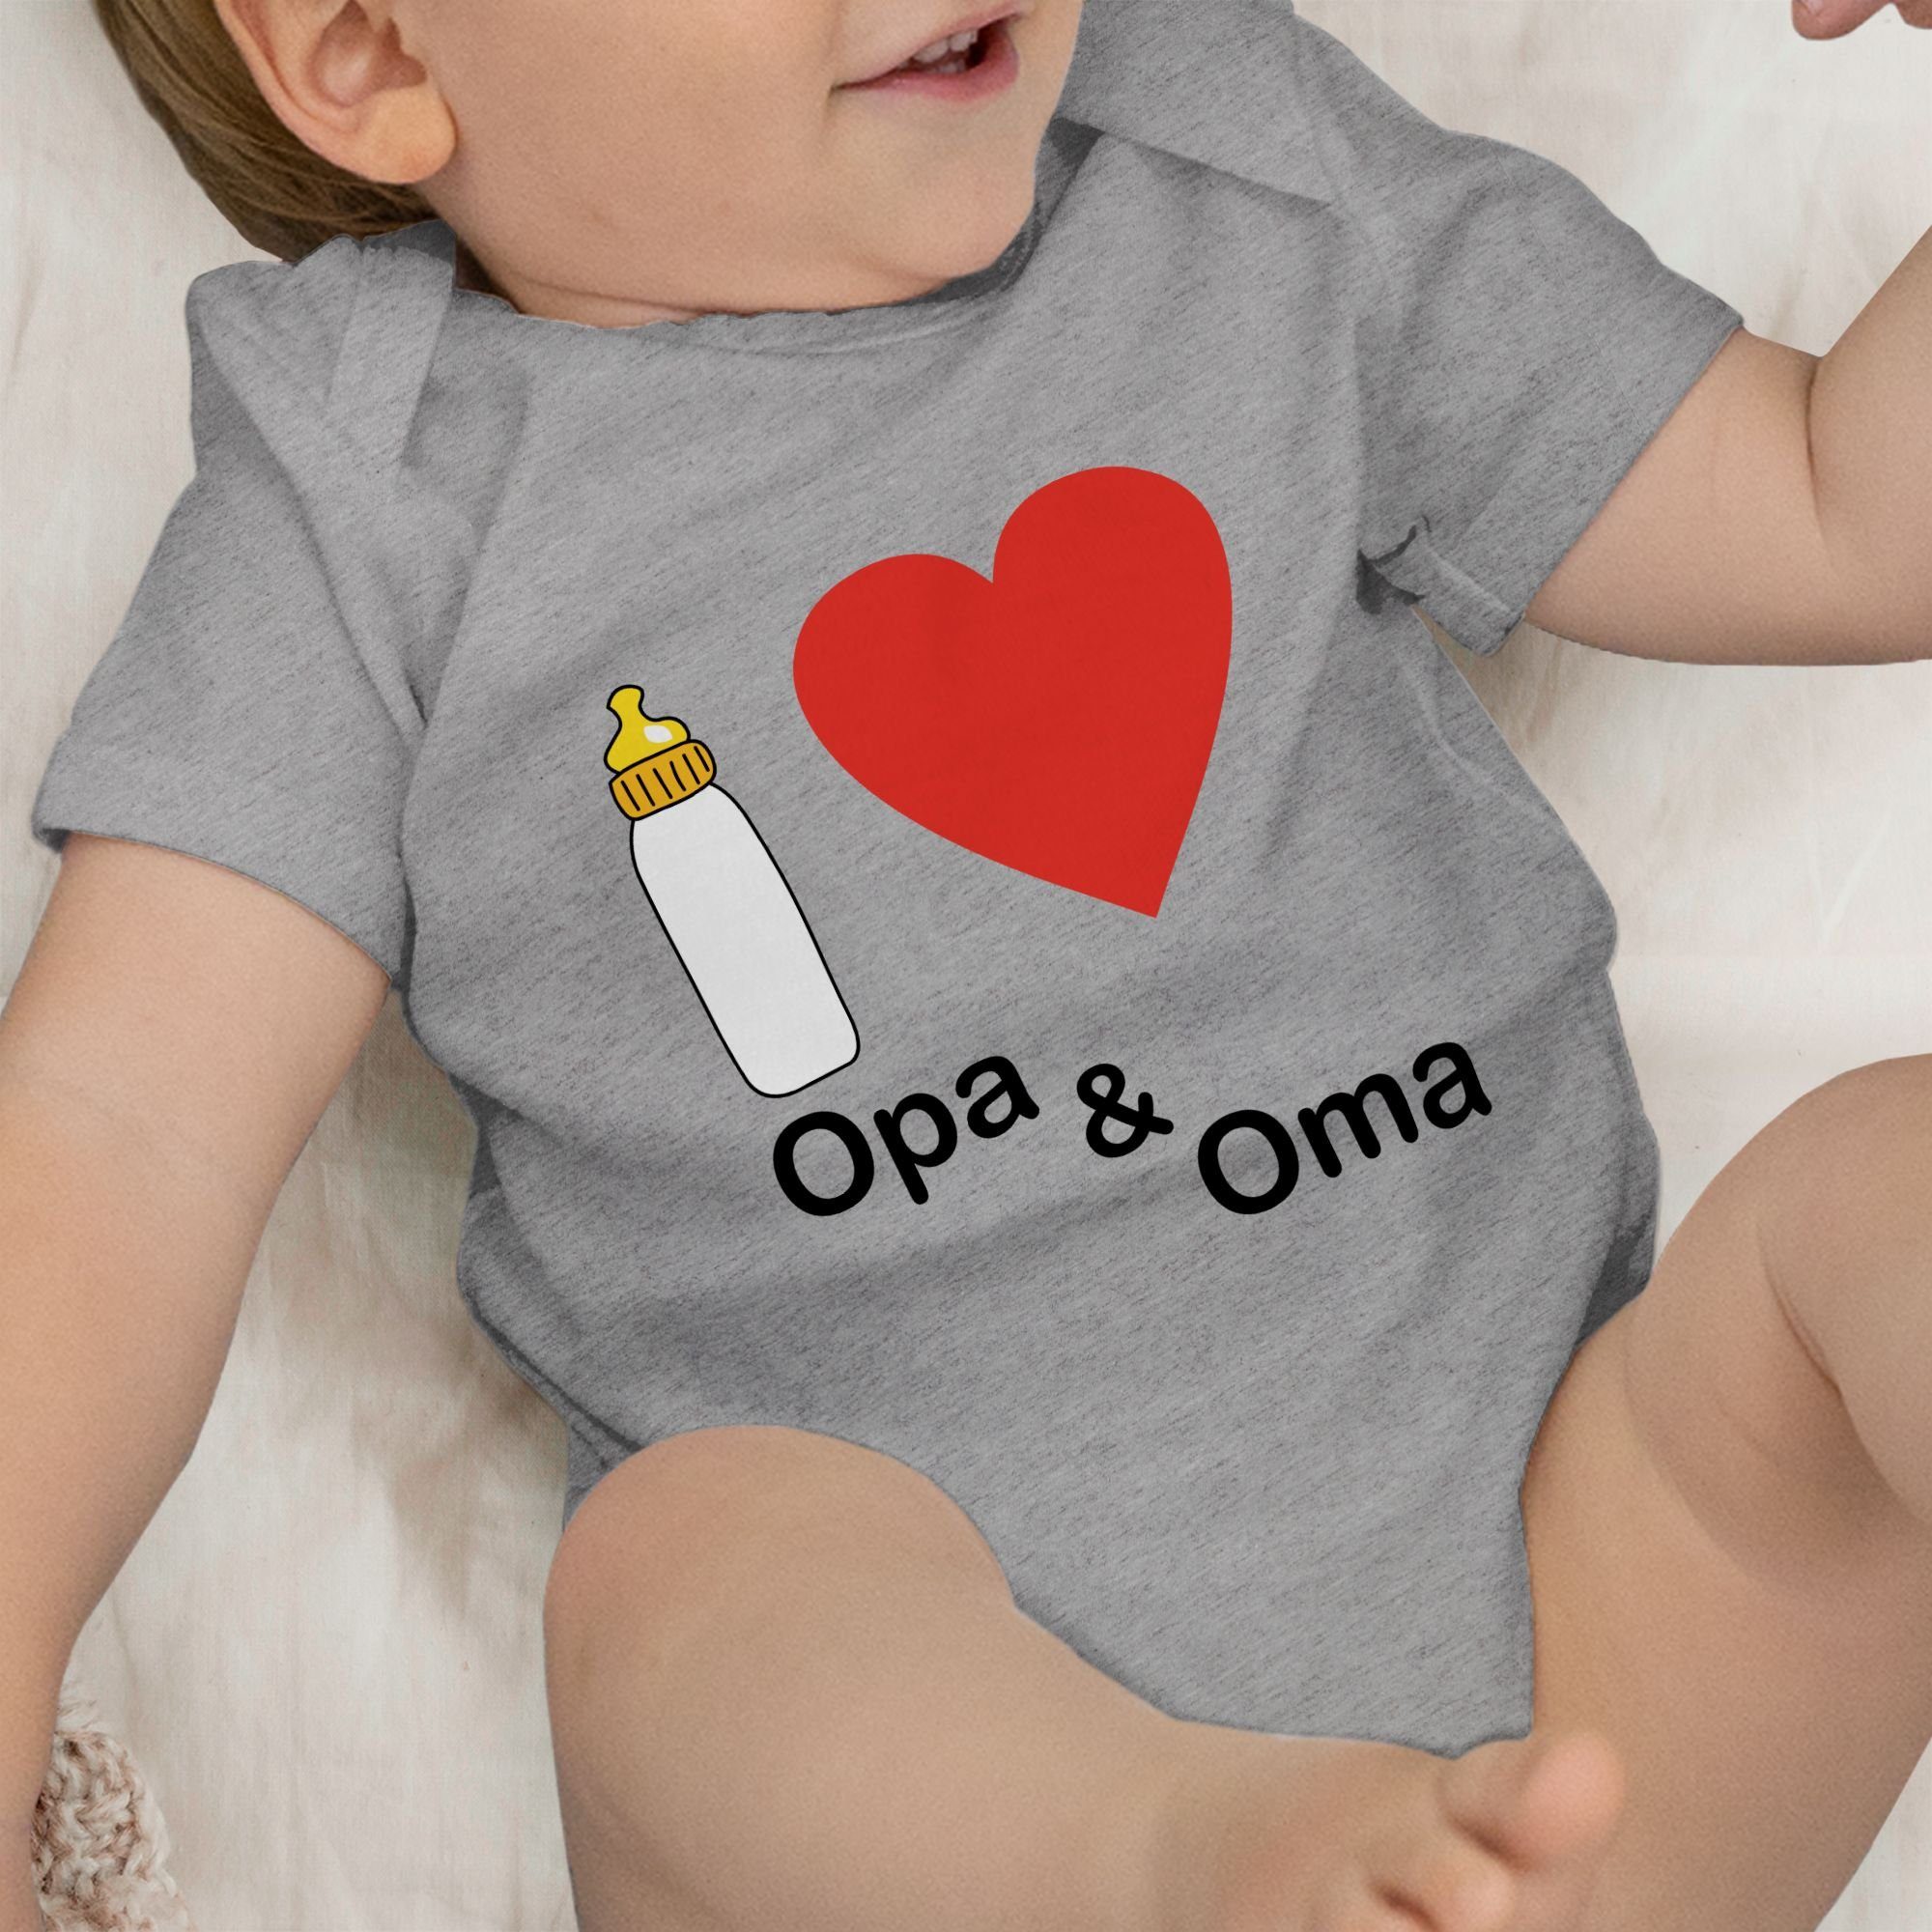 Kinder Mädchen (Gr. 50 - 92) Shirtracer Shirtbody I love Opa und Oma Nuckelflasche - Aktuelle Trends Baby - Baby Body Kurzarm Kl